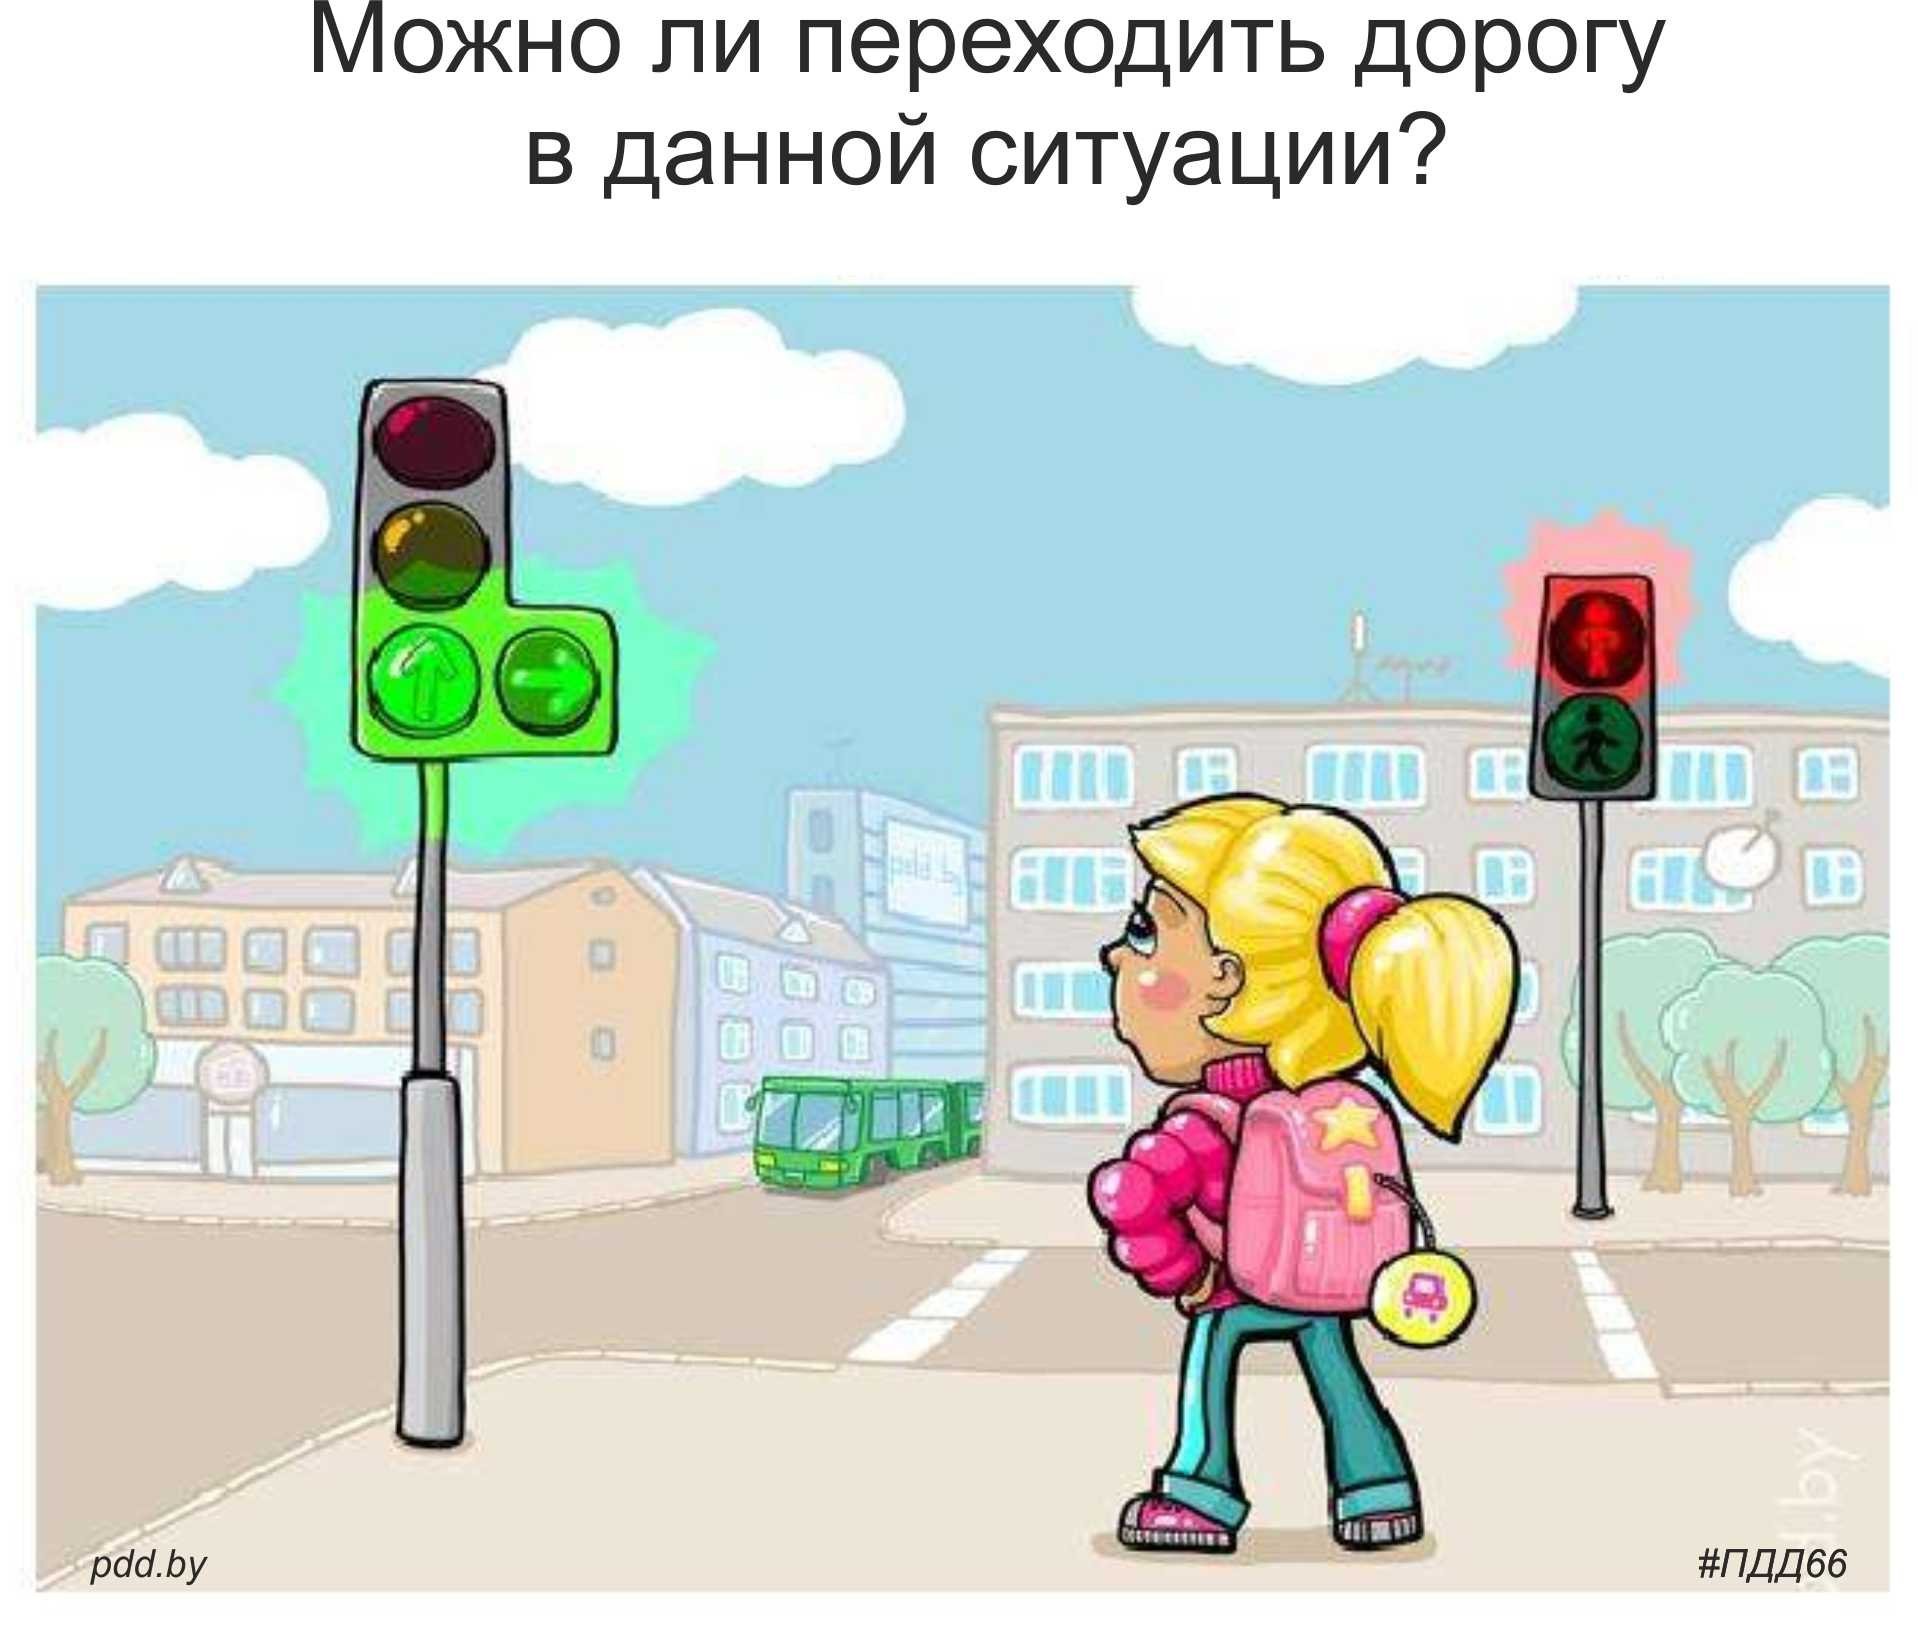 Переход на красный пешеход. Светофор для пешеходов. Дети переходят до орогу на светофоре. Светофор рисунок. Переходить улицу на зеленый сигнал светофора.